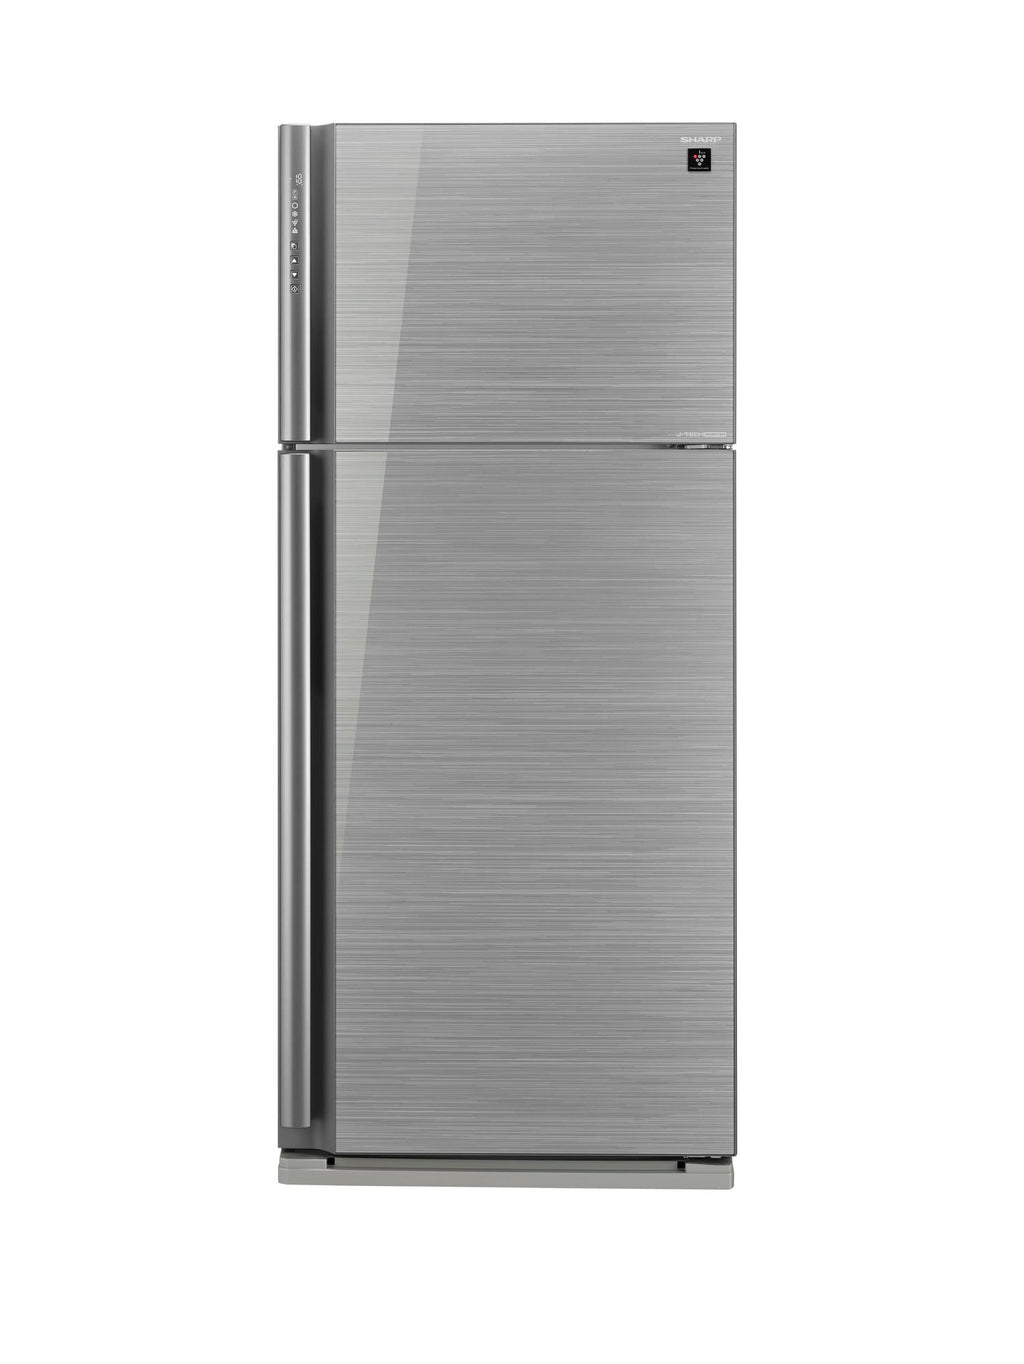 Sharp - Refrigerator (585L) + Free Coffee Maker 800W 1.8L & Airfryer 7L /  1650W